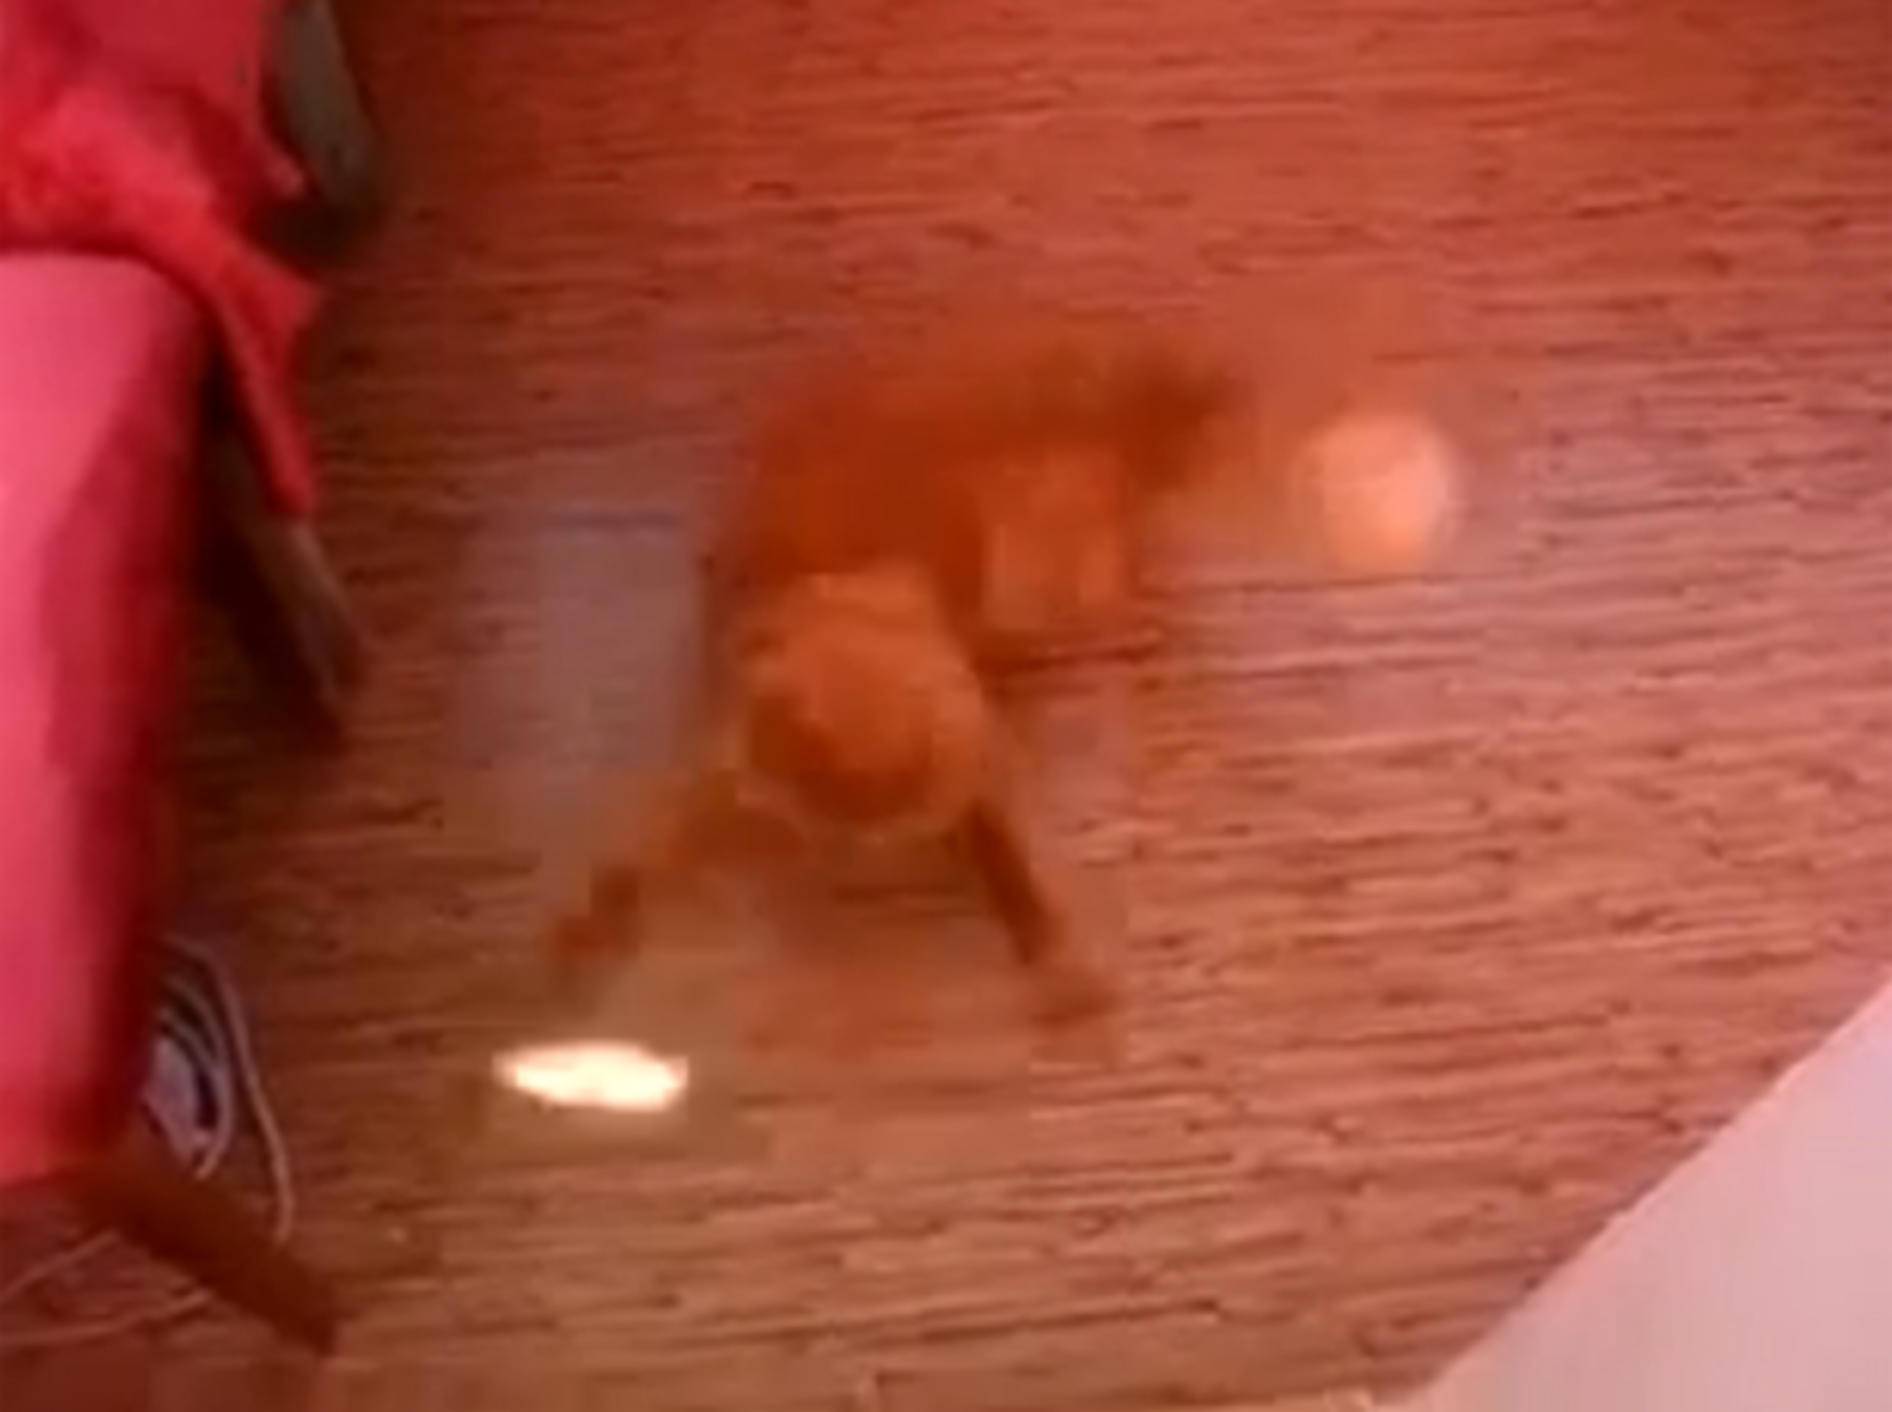 Stepptänzer: Rothaarige Katze legt ne flotte Sohle aufs Parkett